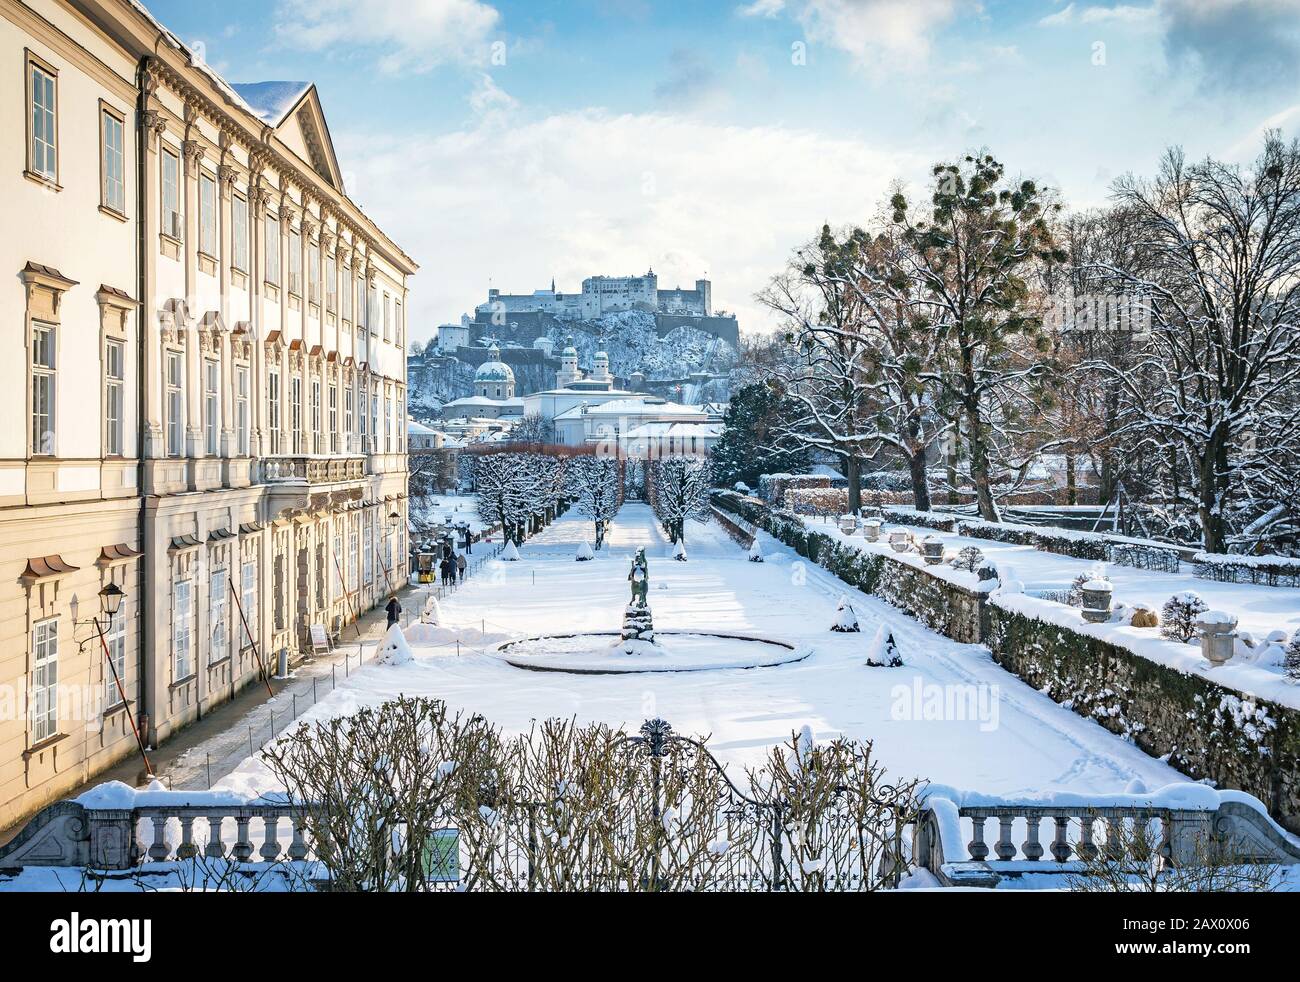 Klassischer Blick auf die berühmten Mirabell-Gärten in der historischen Stadt Salzburg mit der Festung Hohensalzburg an einem schönen schneebedeckten Winterabend, Österreich Stockfoto